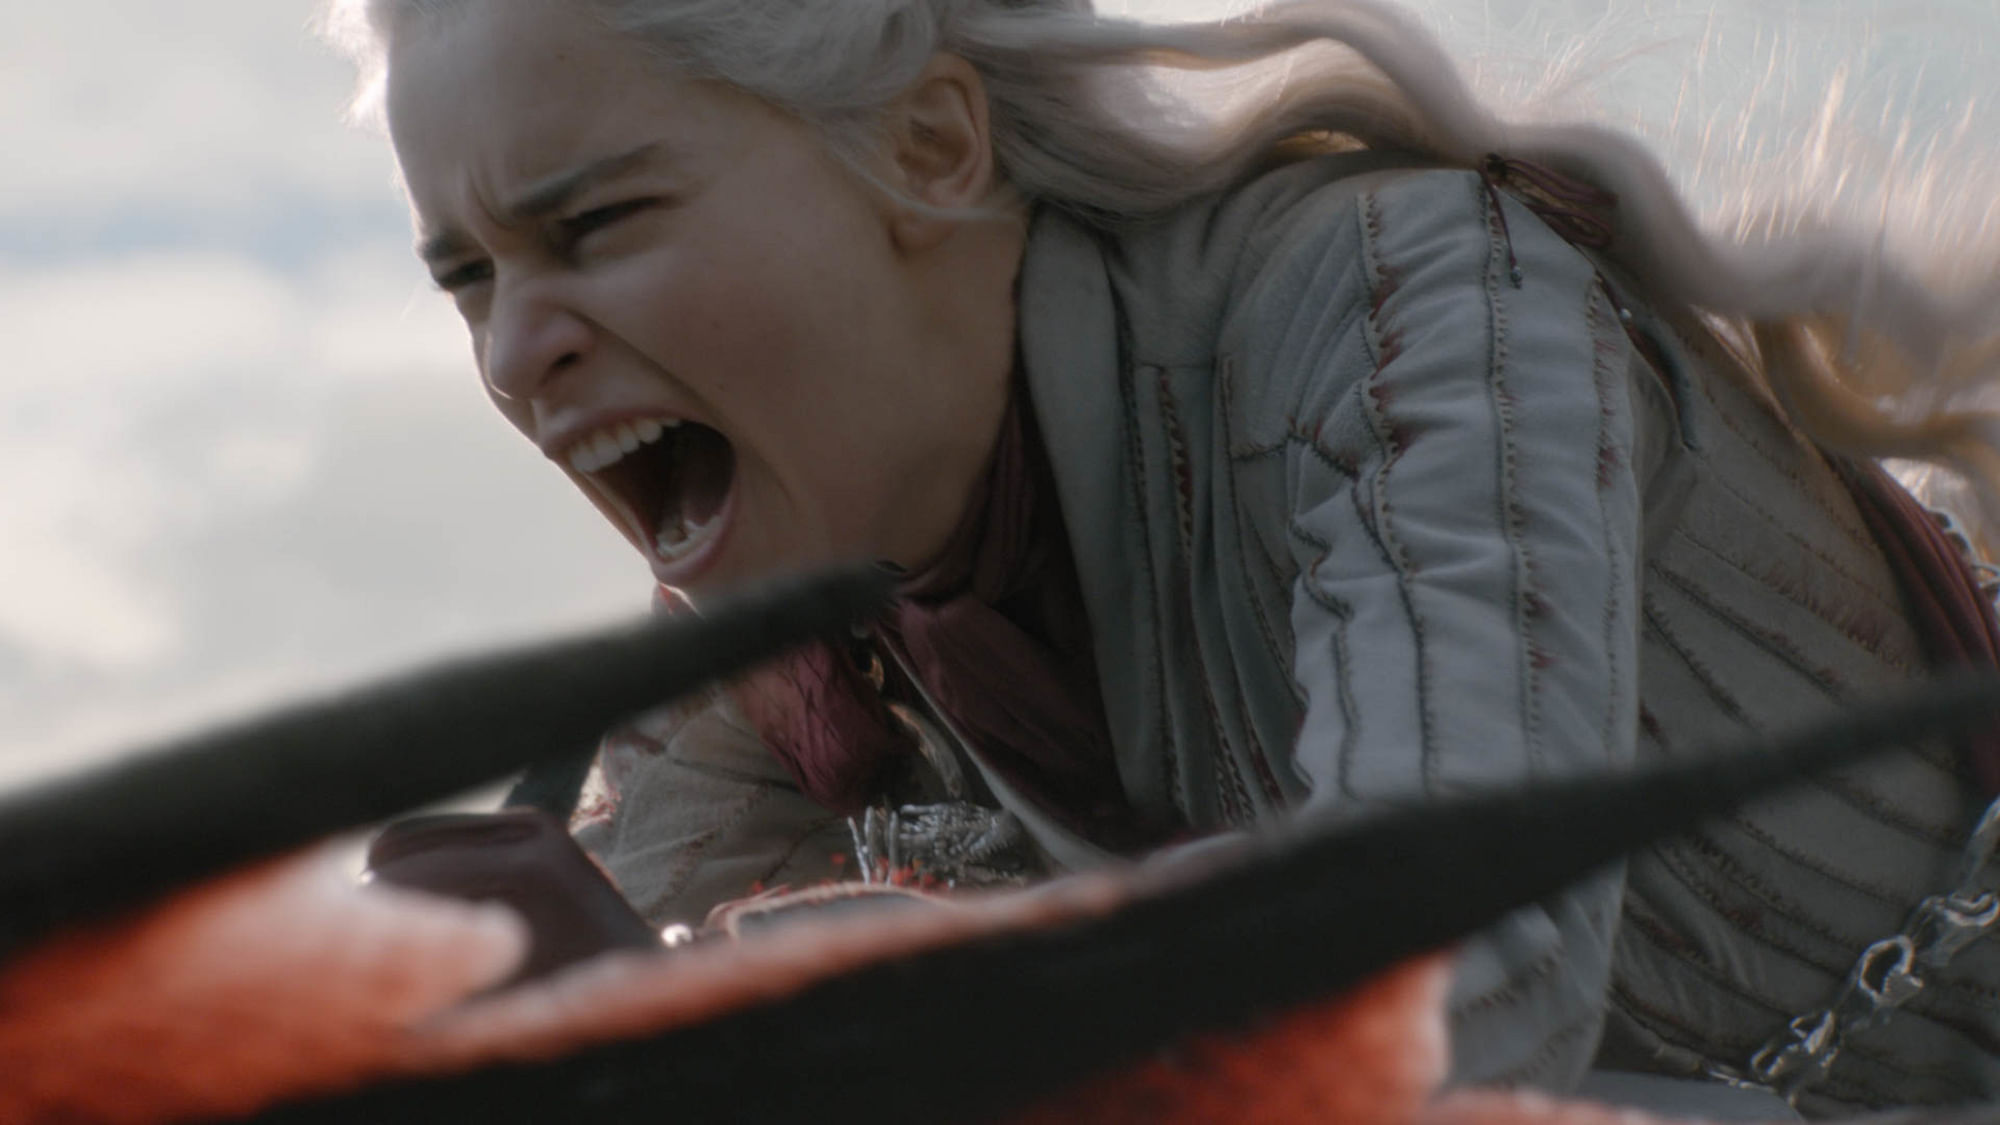 Daenerys Targaryen charges into battle field.